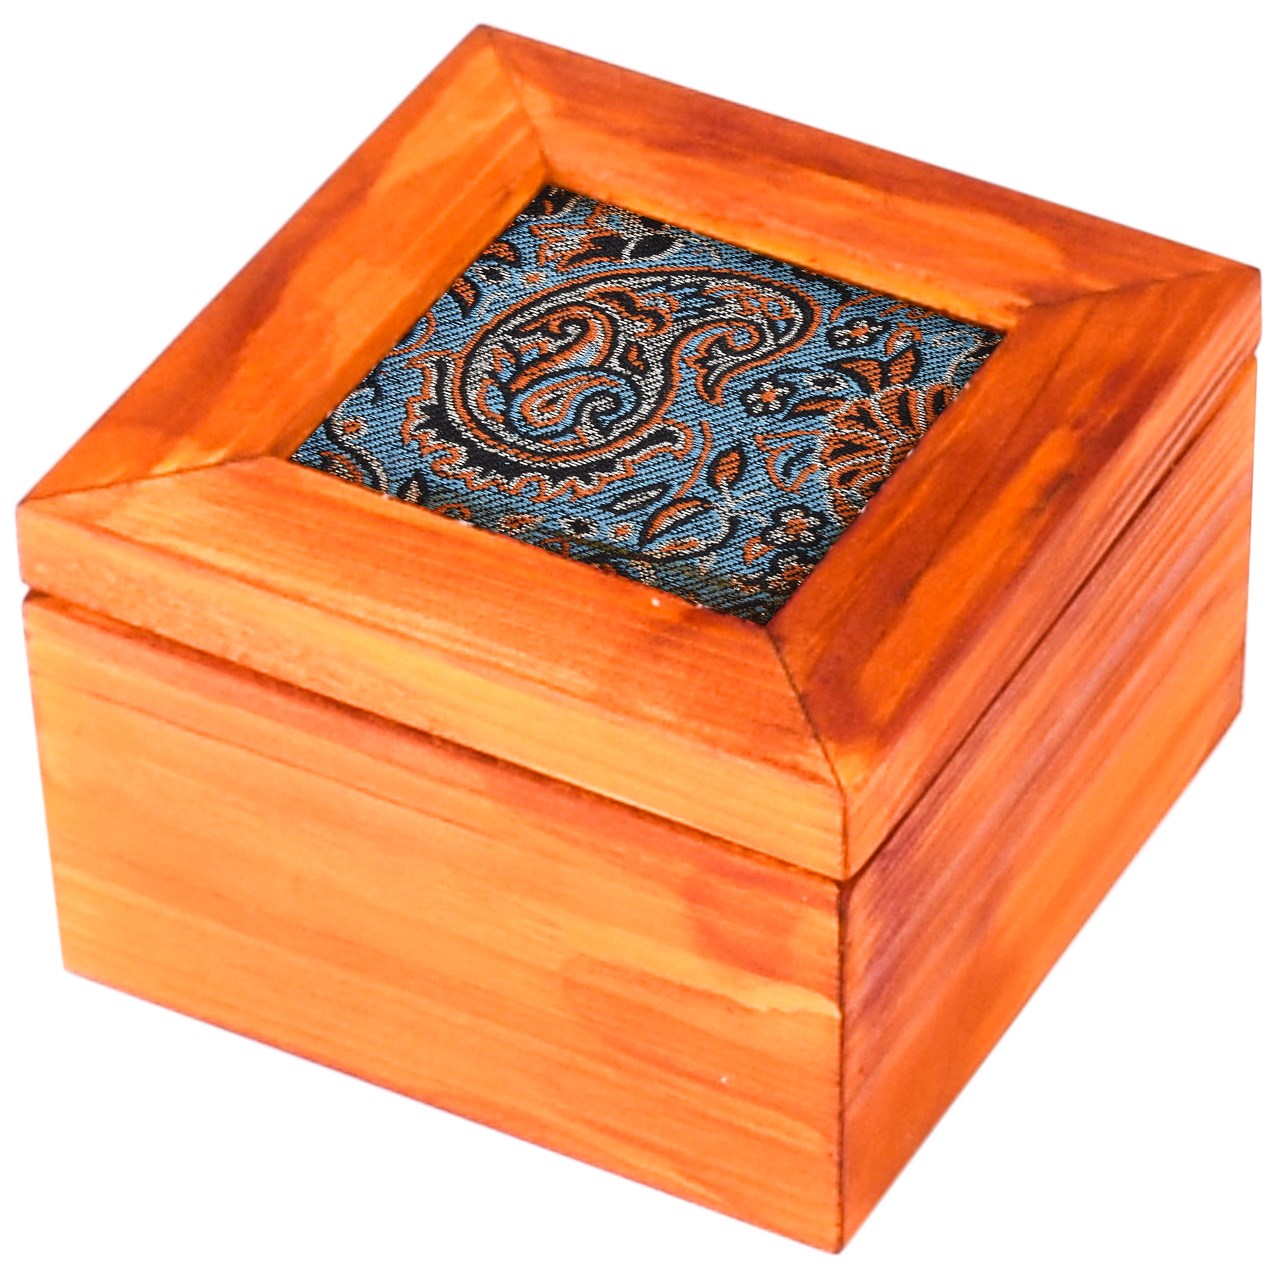 جعبه چوبی گروه هنری دست استودیو طرح ترمه مربع مدل 01-01 سایز کوچک